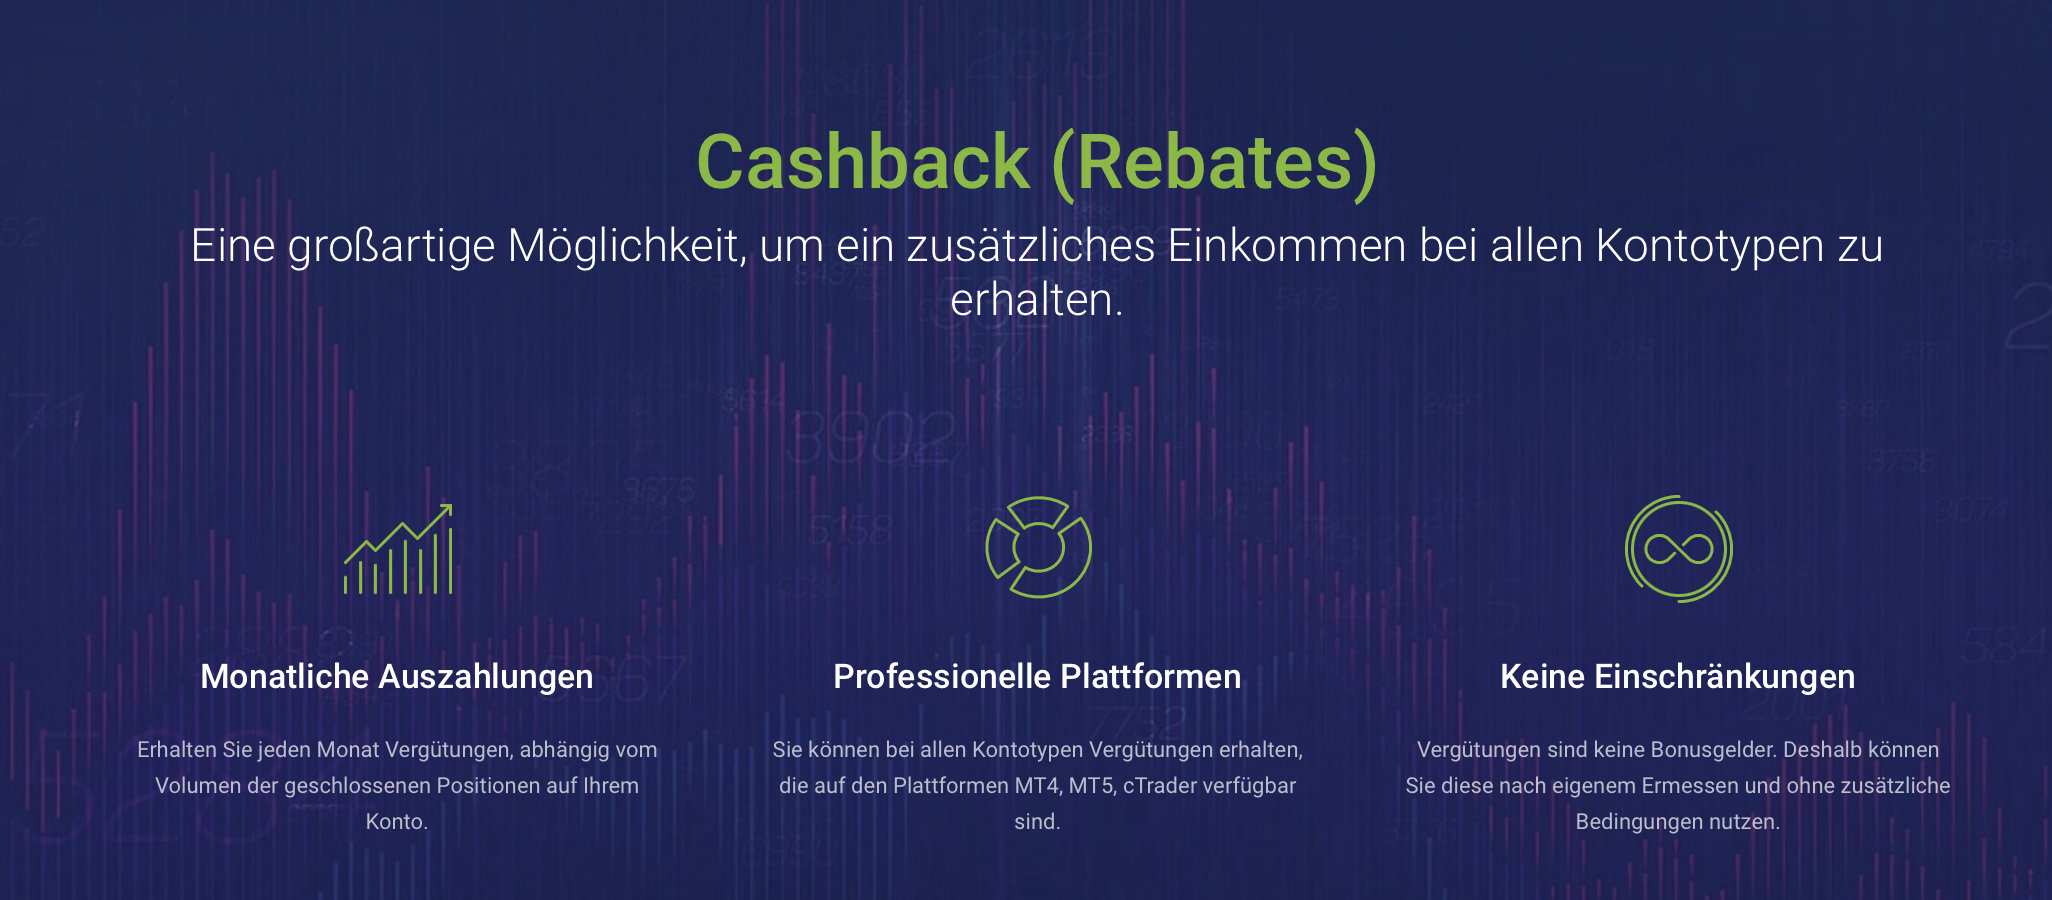 Cashback Rebates